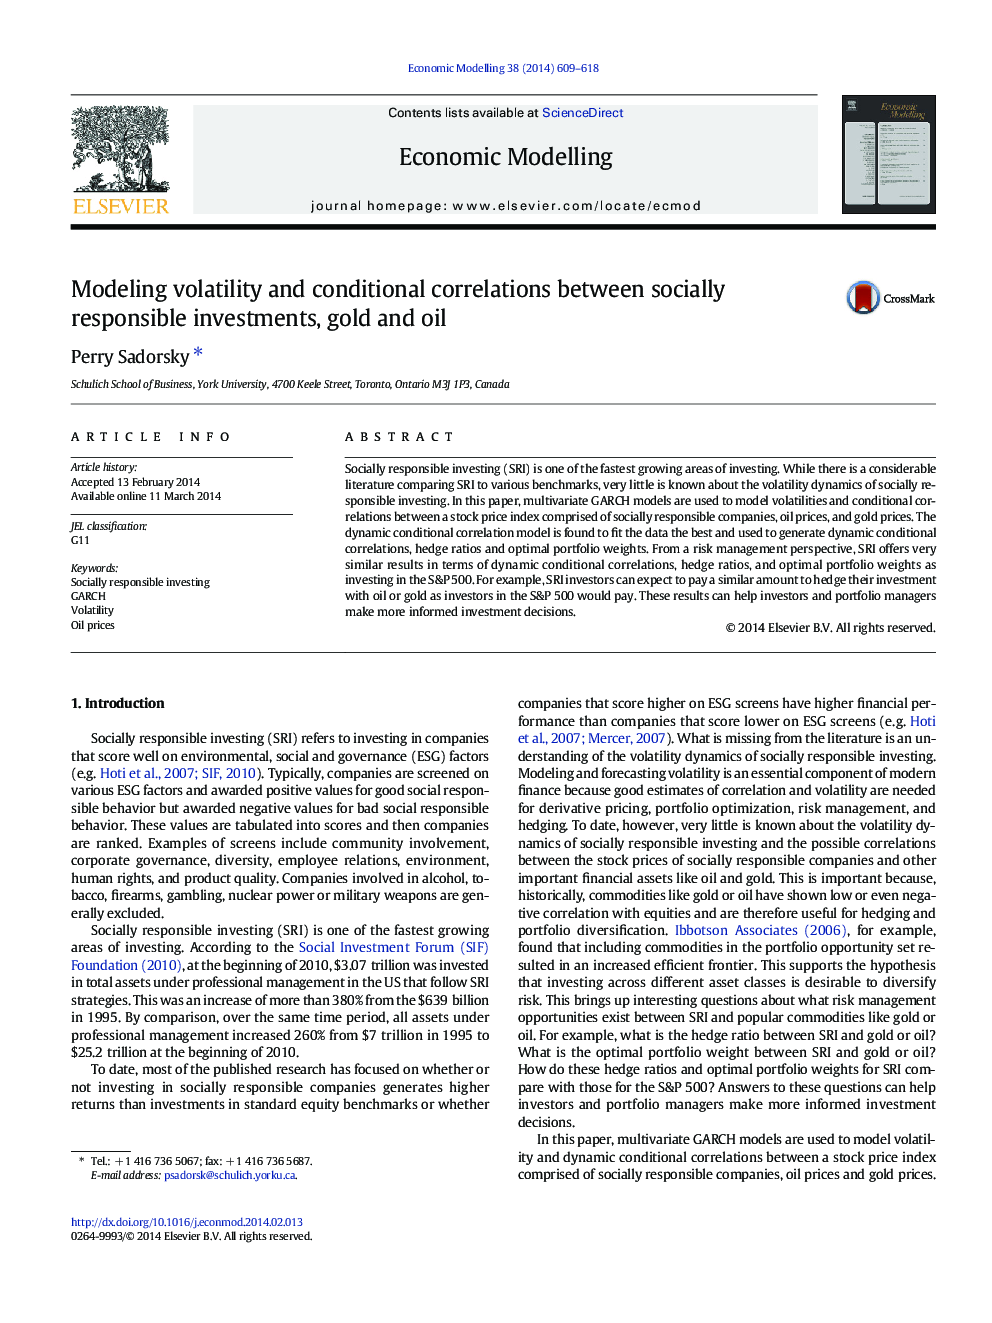 نوسانات مدل سازی و همبستگی های شرطی بین سرمایه گذاری های مسئول اجتماعی، طلا و نفت 